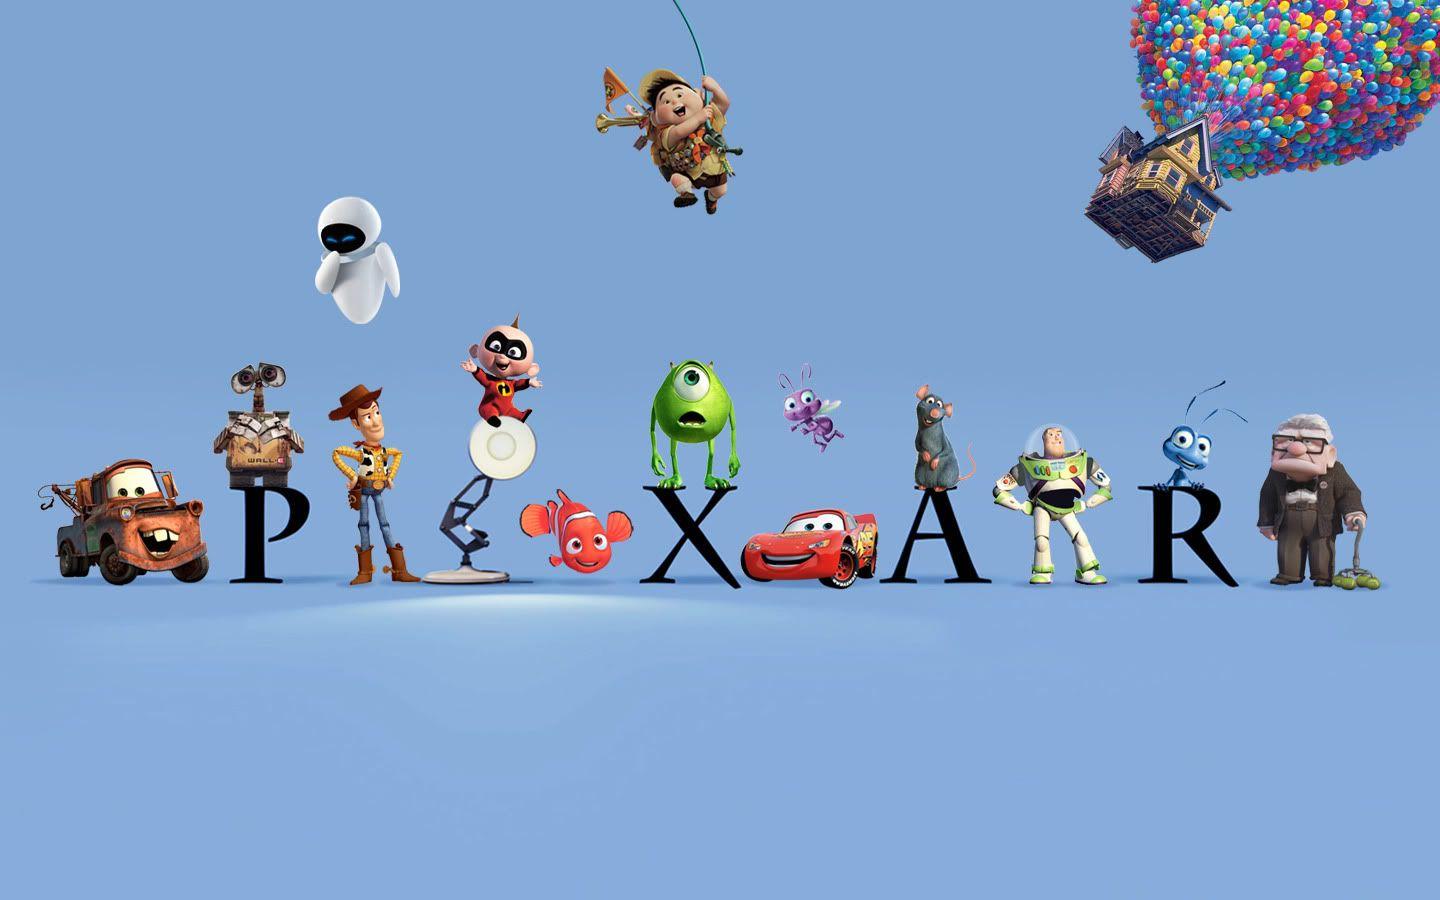 Disney Pixar Films Logo - The early versions of Pixar film stories. Den of Geek